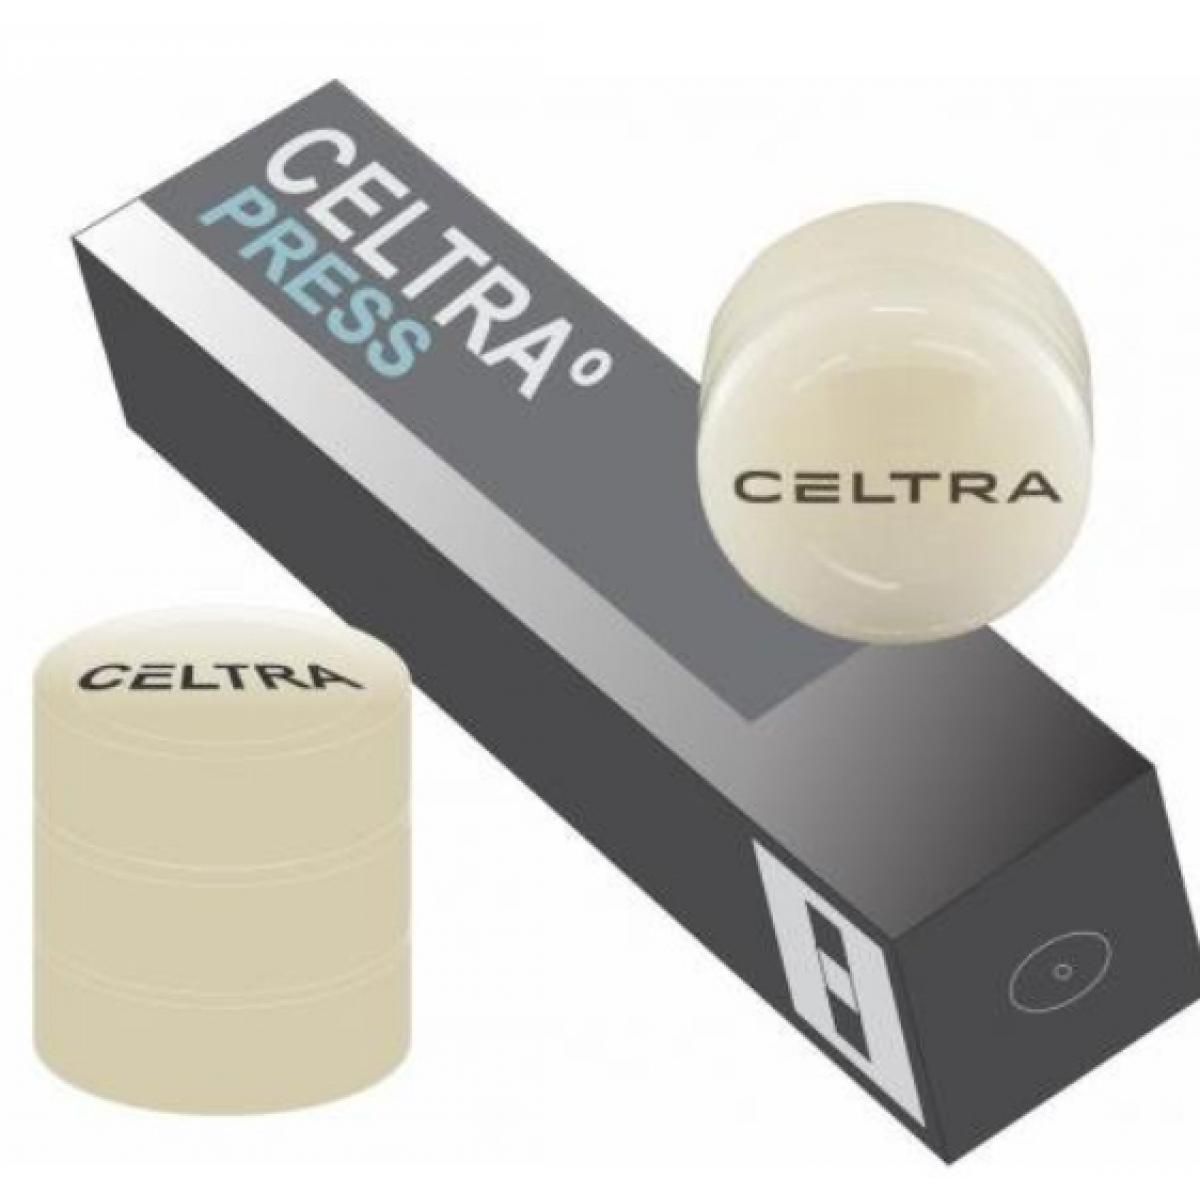 CELTRA PRESS LT D3 5 X 3 GR DENTSPLY -